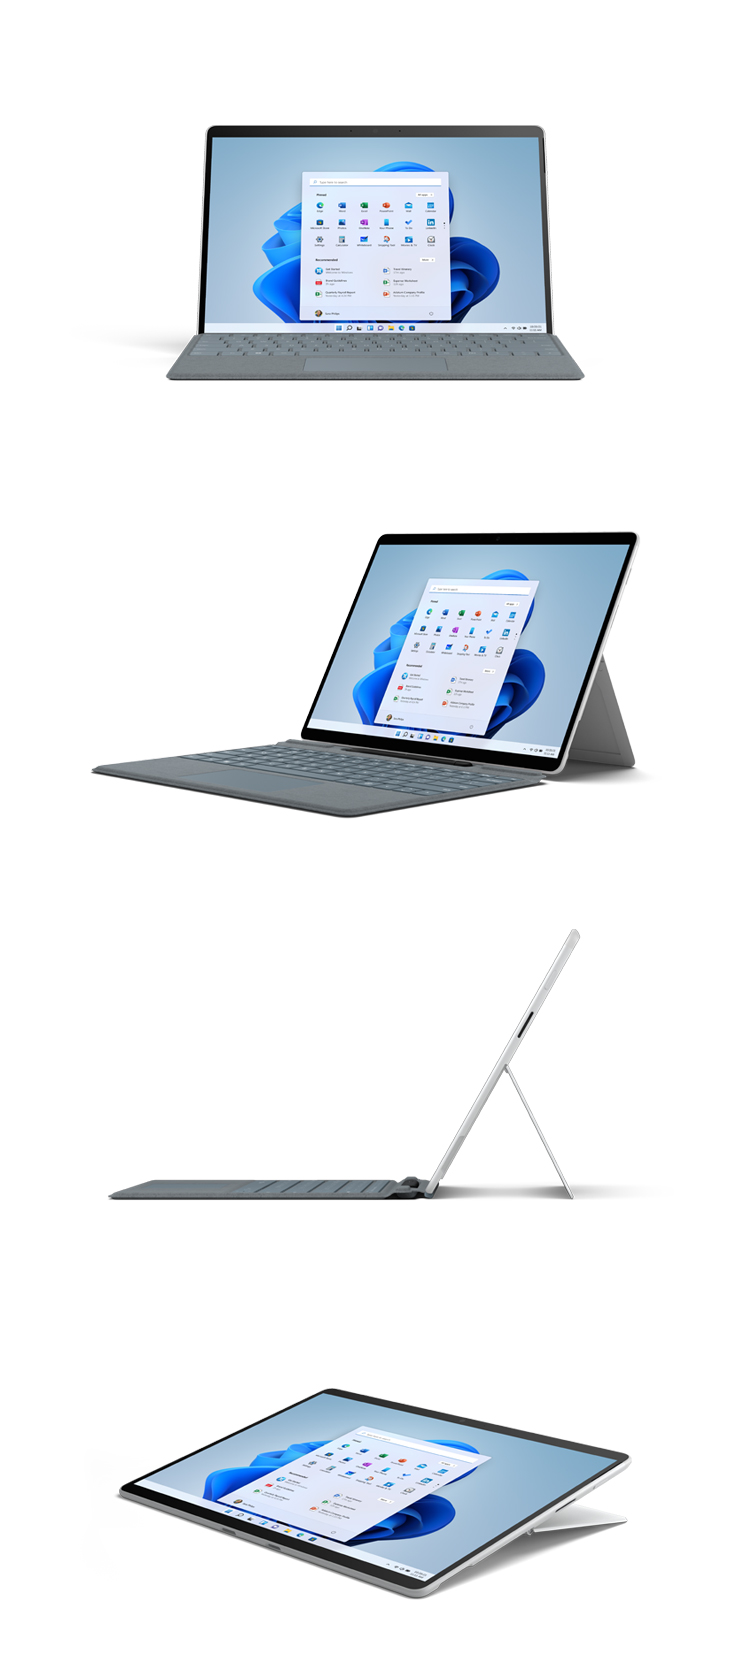 Abbildungen des Surface Pro X in Platin von vorne, schräg, von der Seite und im Studio-Modus.